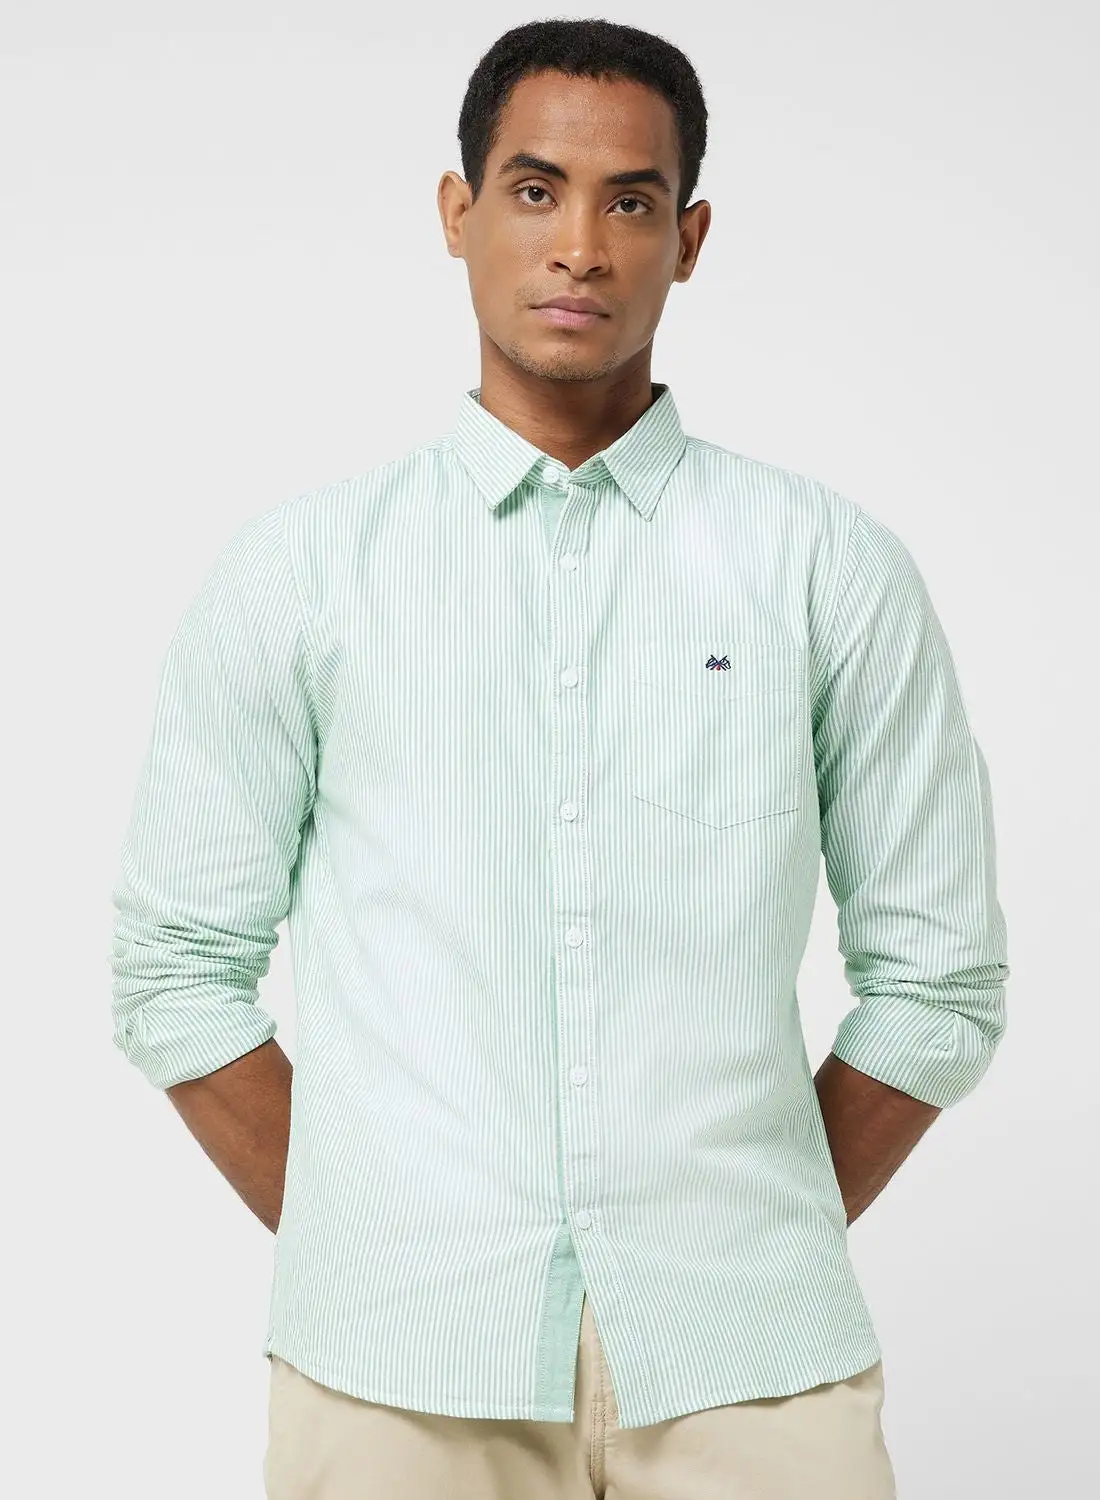 قميص توماس سكوت توماس سكوت الرجالي ذو اللون الأخضر النحيف غير الشفاف